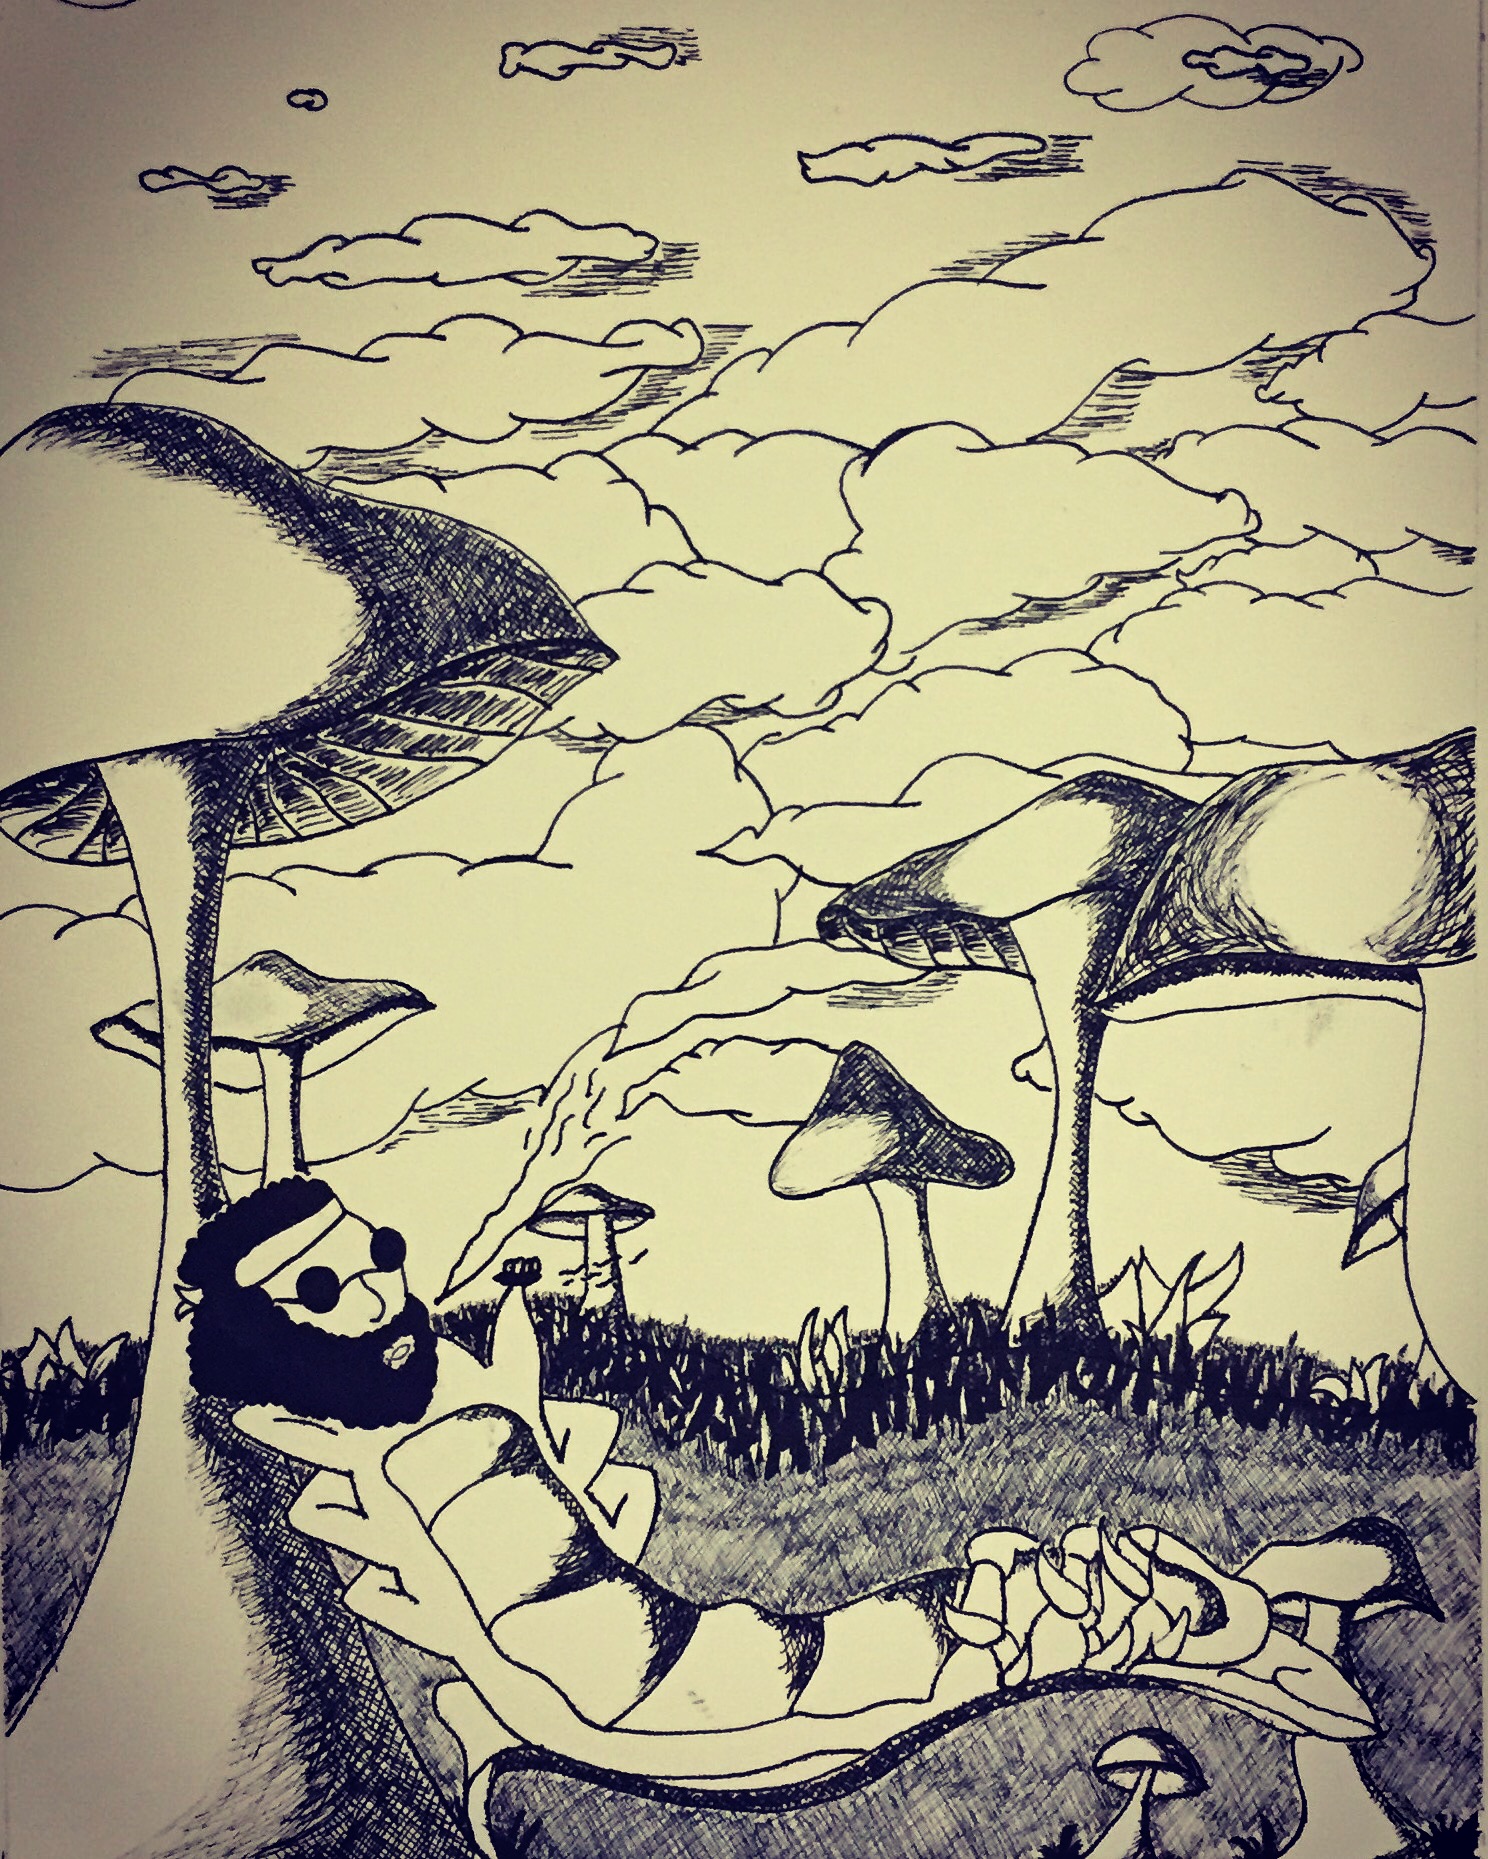 Catipiller somking on a mushroom